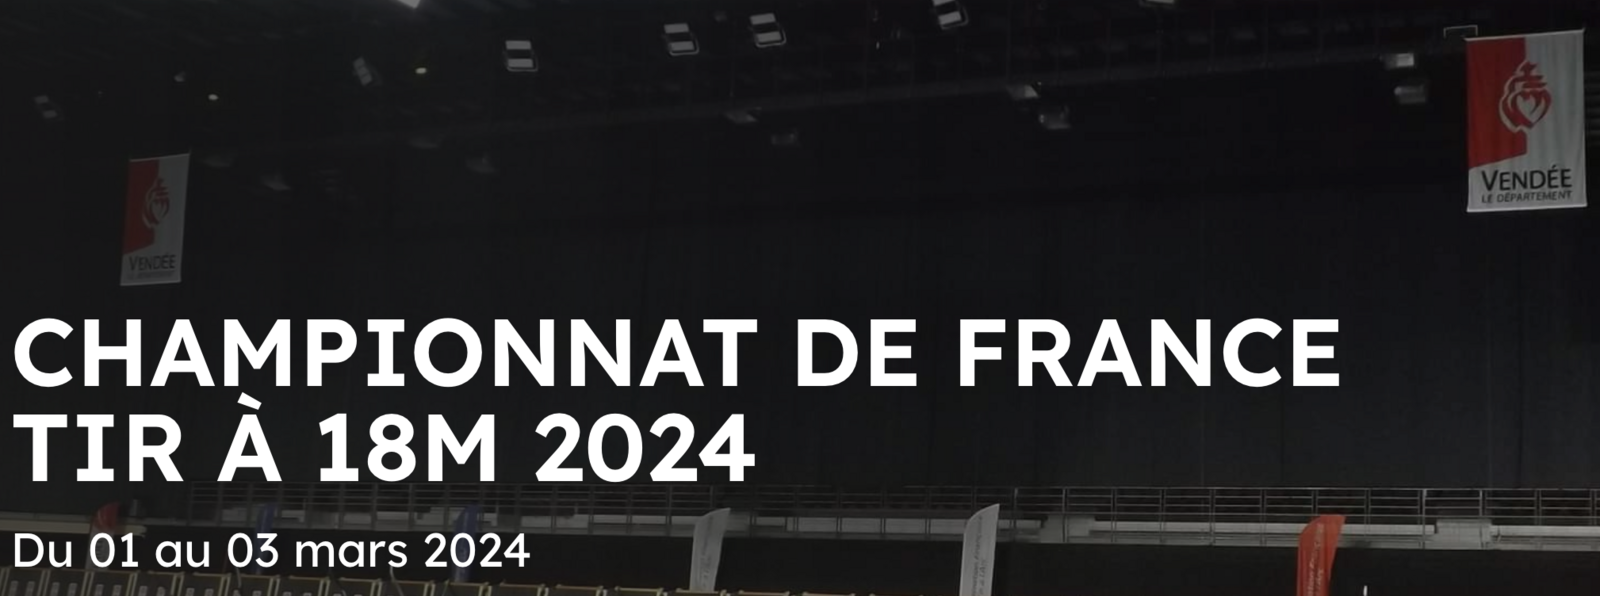 Championnat de France Tir à 18m Adultes du 01 au 03 mars 2024 à MOUILLERON LE CAPTIF